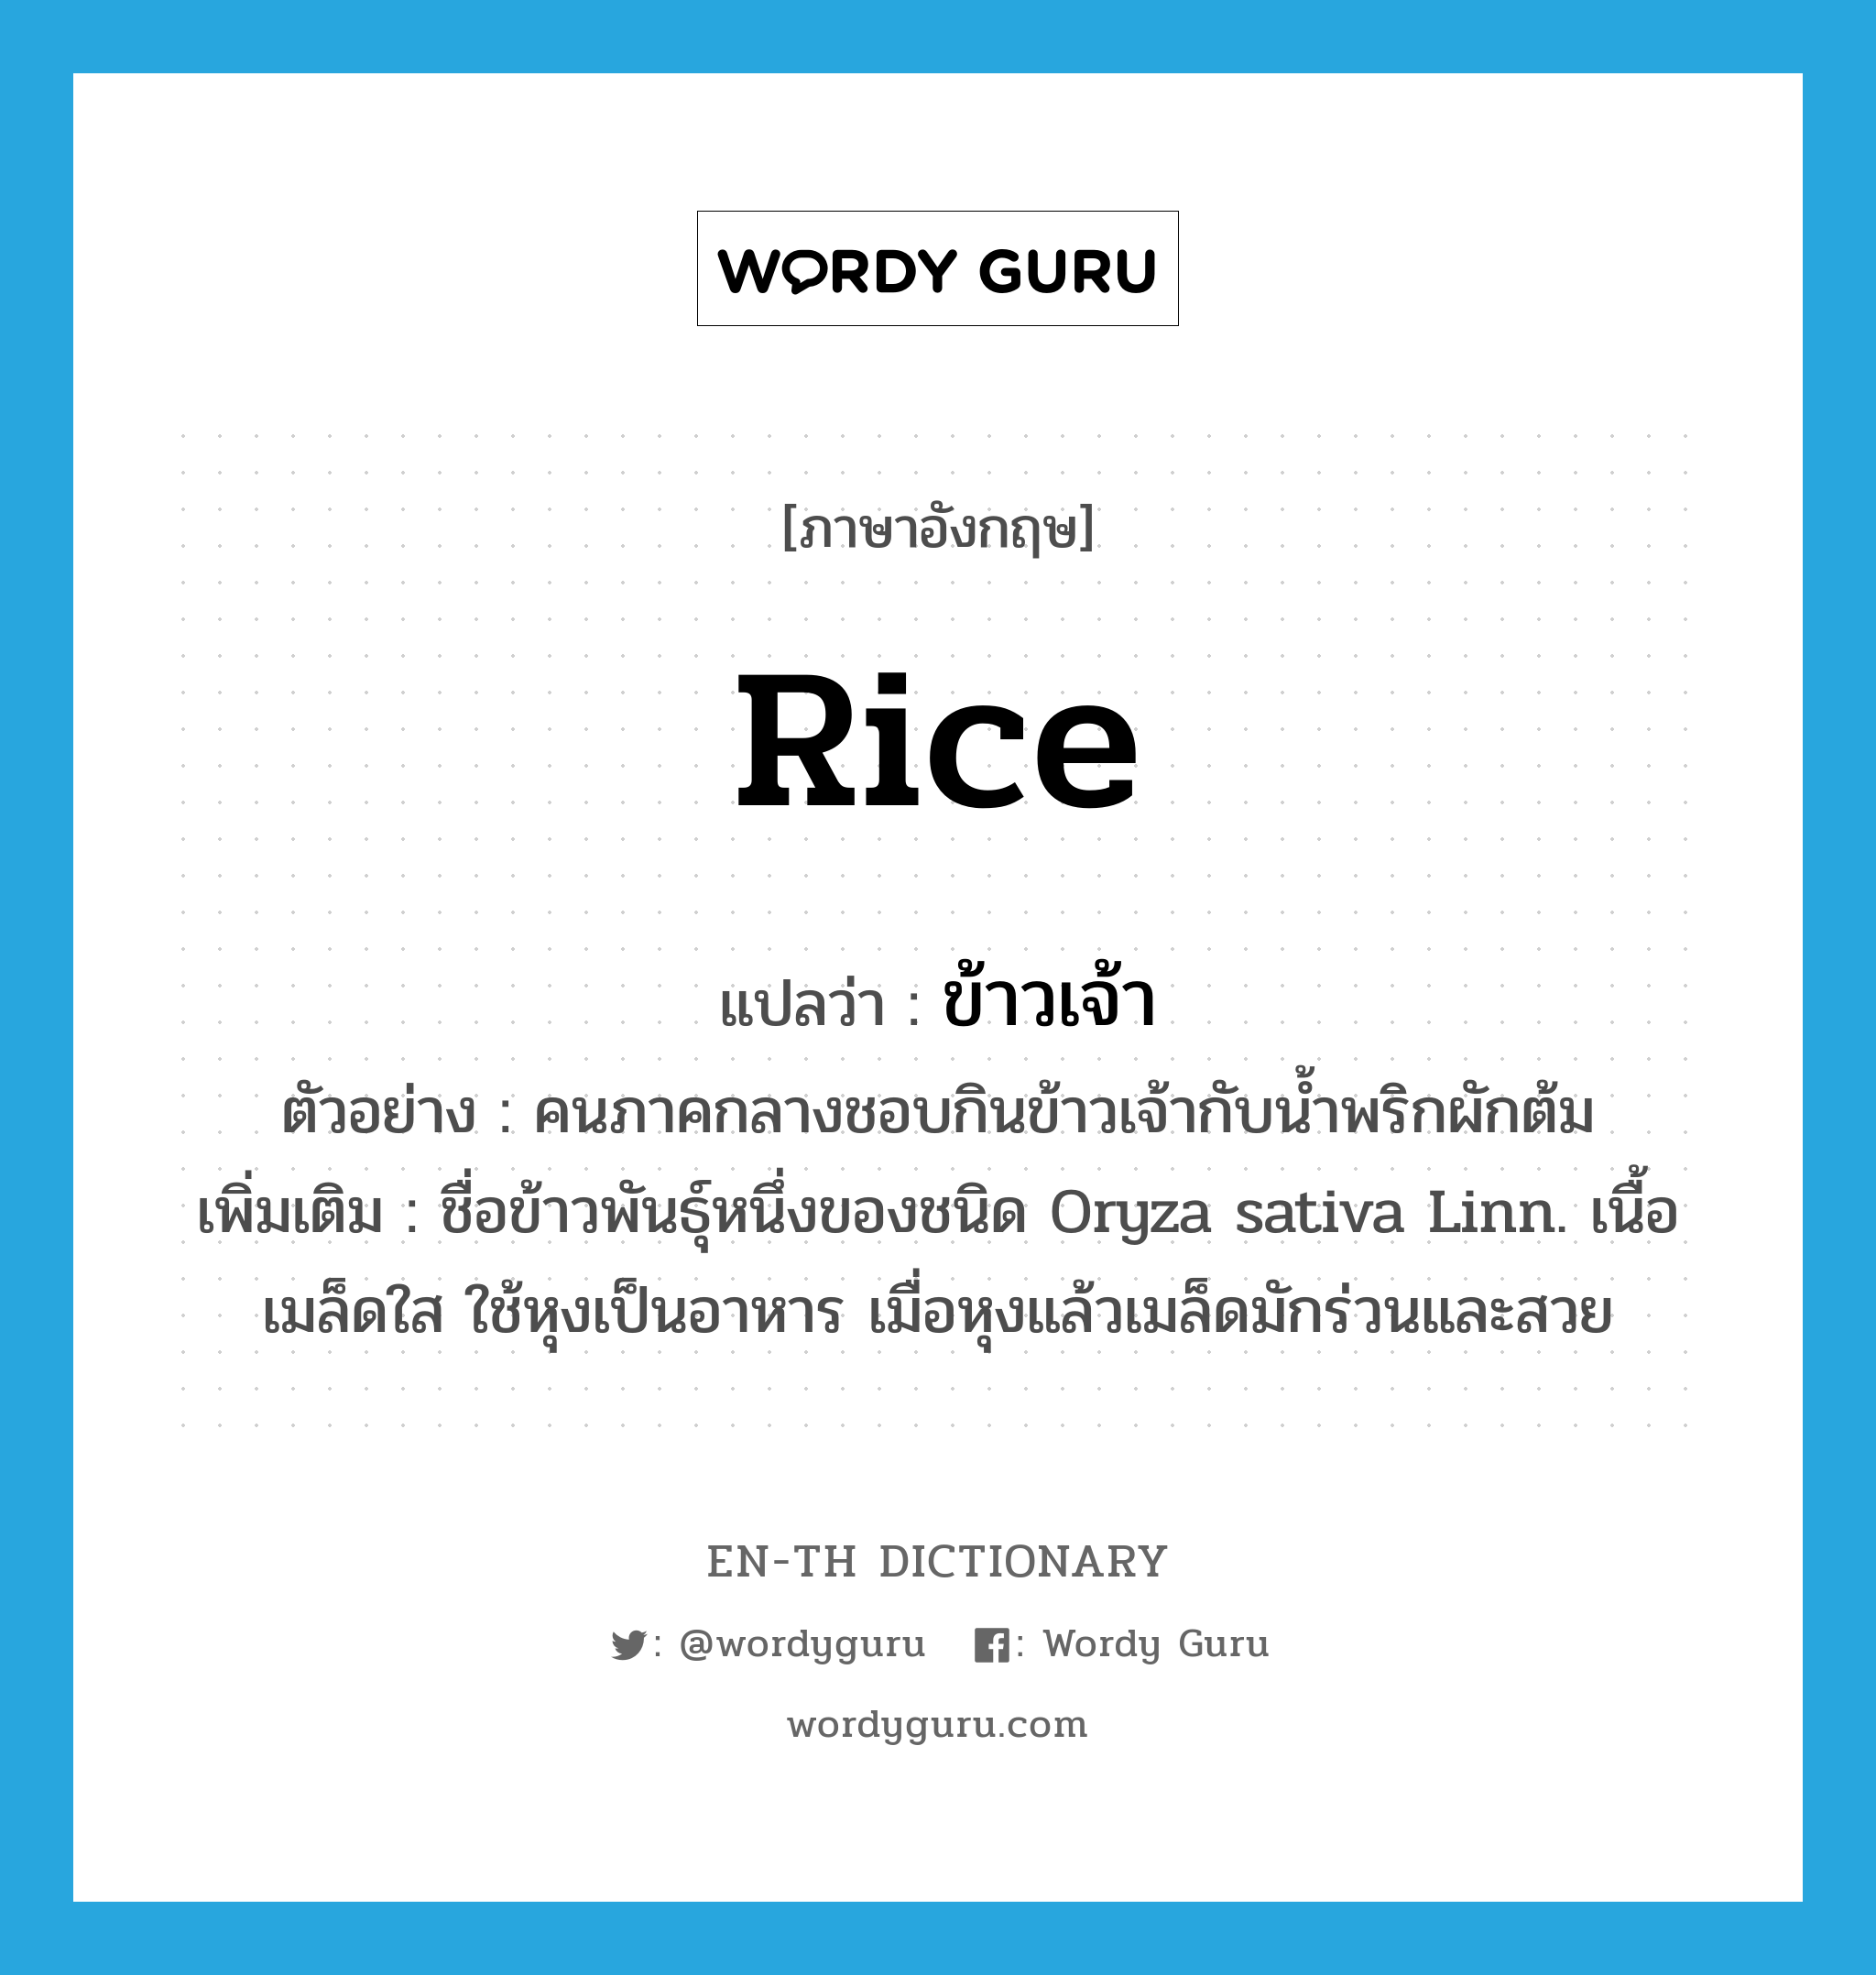 rice แปลว่า?, คำศัพท์ภาษาอังกฤษ rice แปลว่า ข้าวเจ้า ประเภท N ตัวอย่าง คนภาคกลางชอบกินข้าวเจ้ากับน้ำพริกผักต้ม เพิ่มเติม ชื่อข้าวพันธุ์หนึ่งของชนิด Oryza sativa Linn. เนื้อเมล็ดใส ใช้หุงเป็นอาหาร เมื่อหุงแล้วเมล็ดมักร่วนและสวย หมวด N